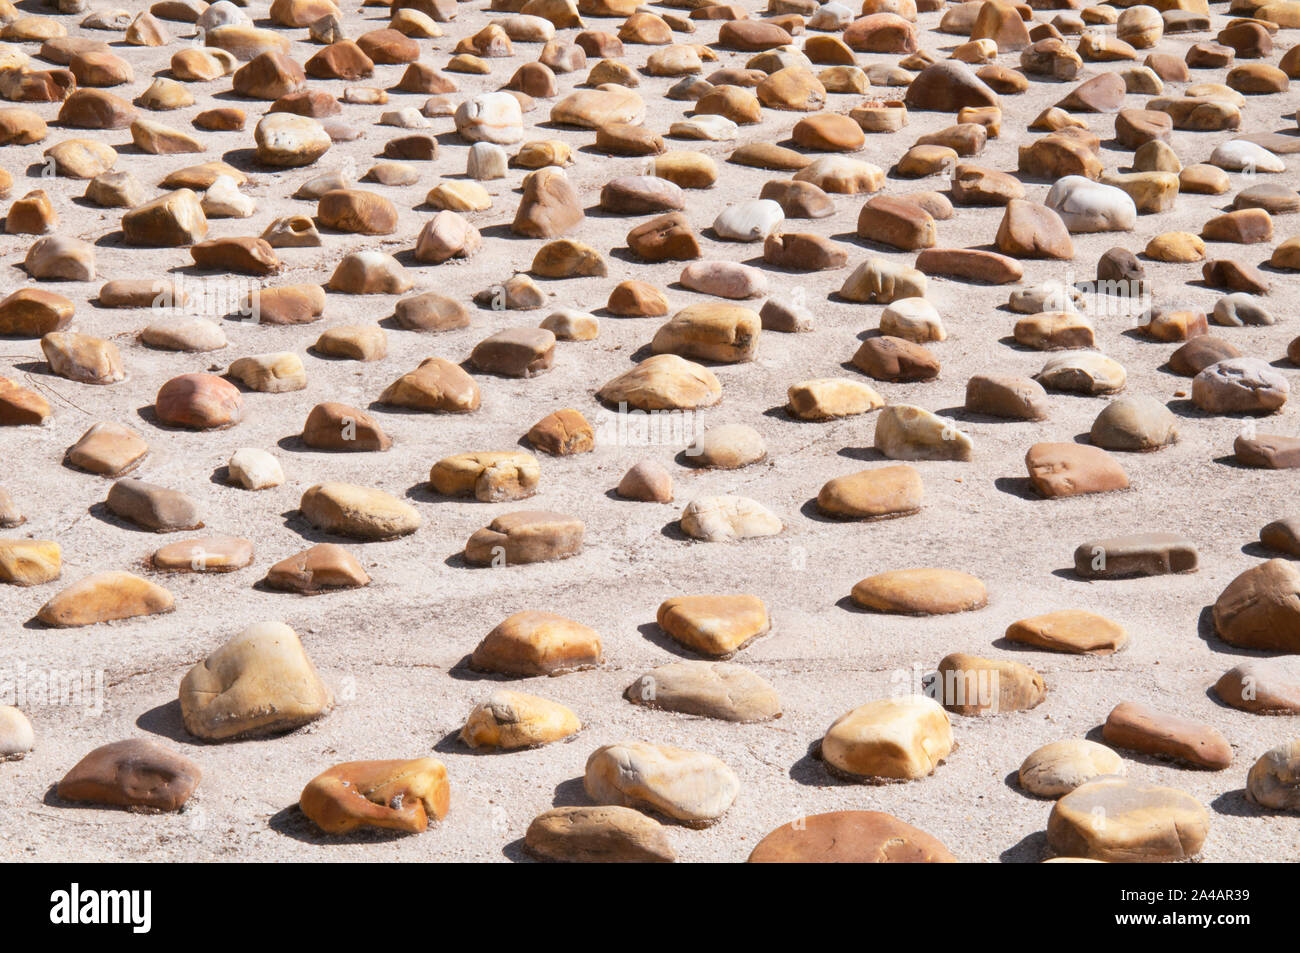 Stones background. Stock Photo